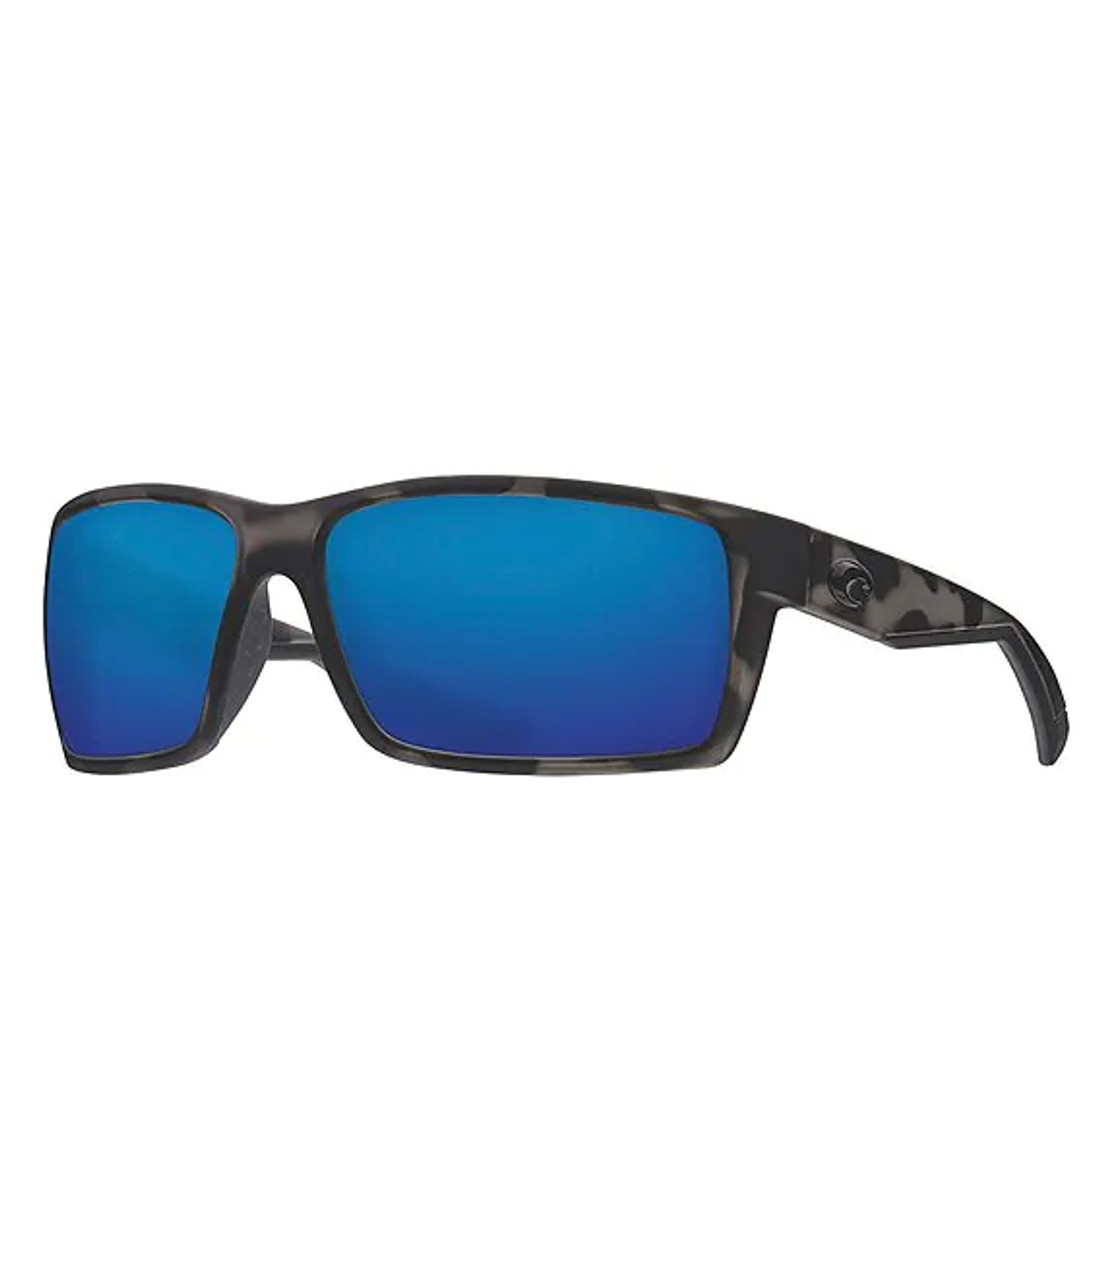 Costa Sunglasses - Reefton Ocearch - Tiger Shark / Blue Mirror